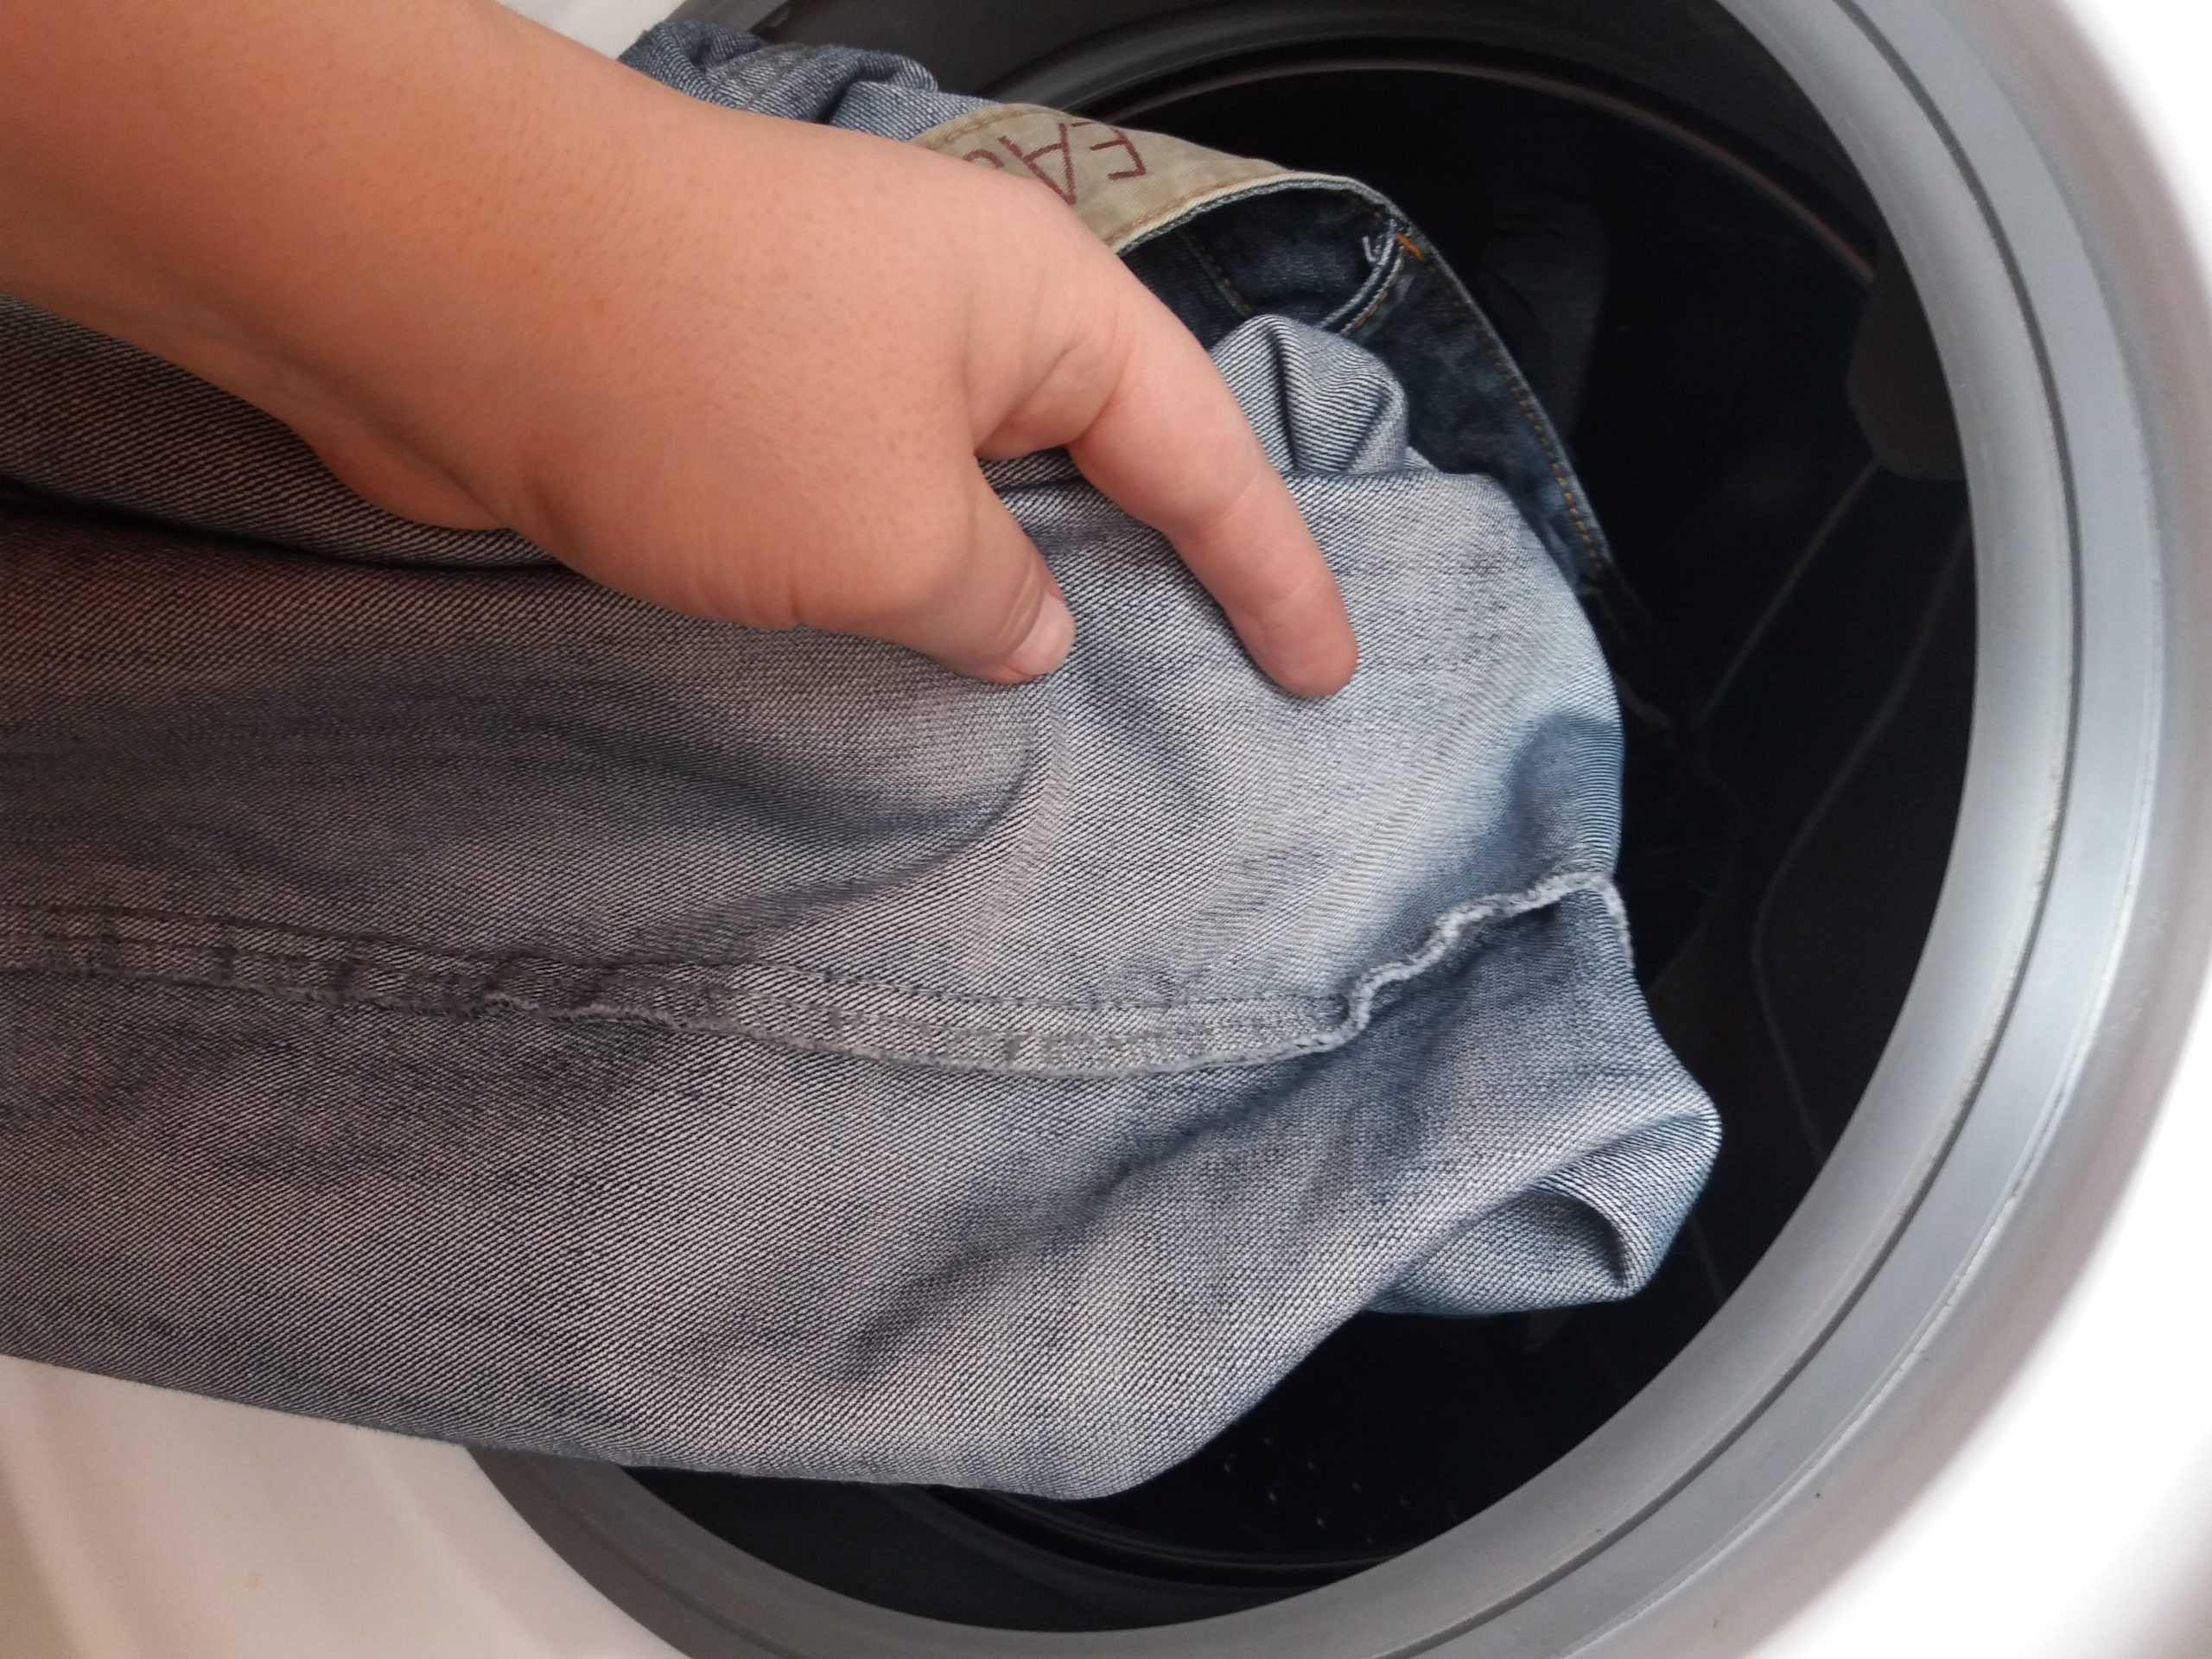 Пятна на одежде после стирки в стиральной машине